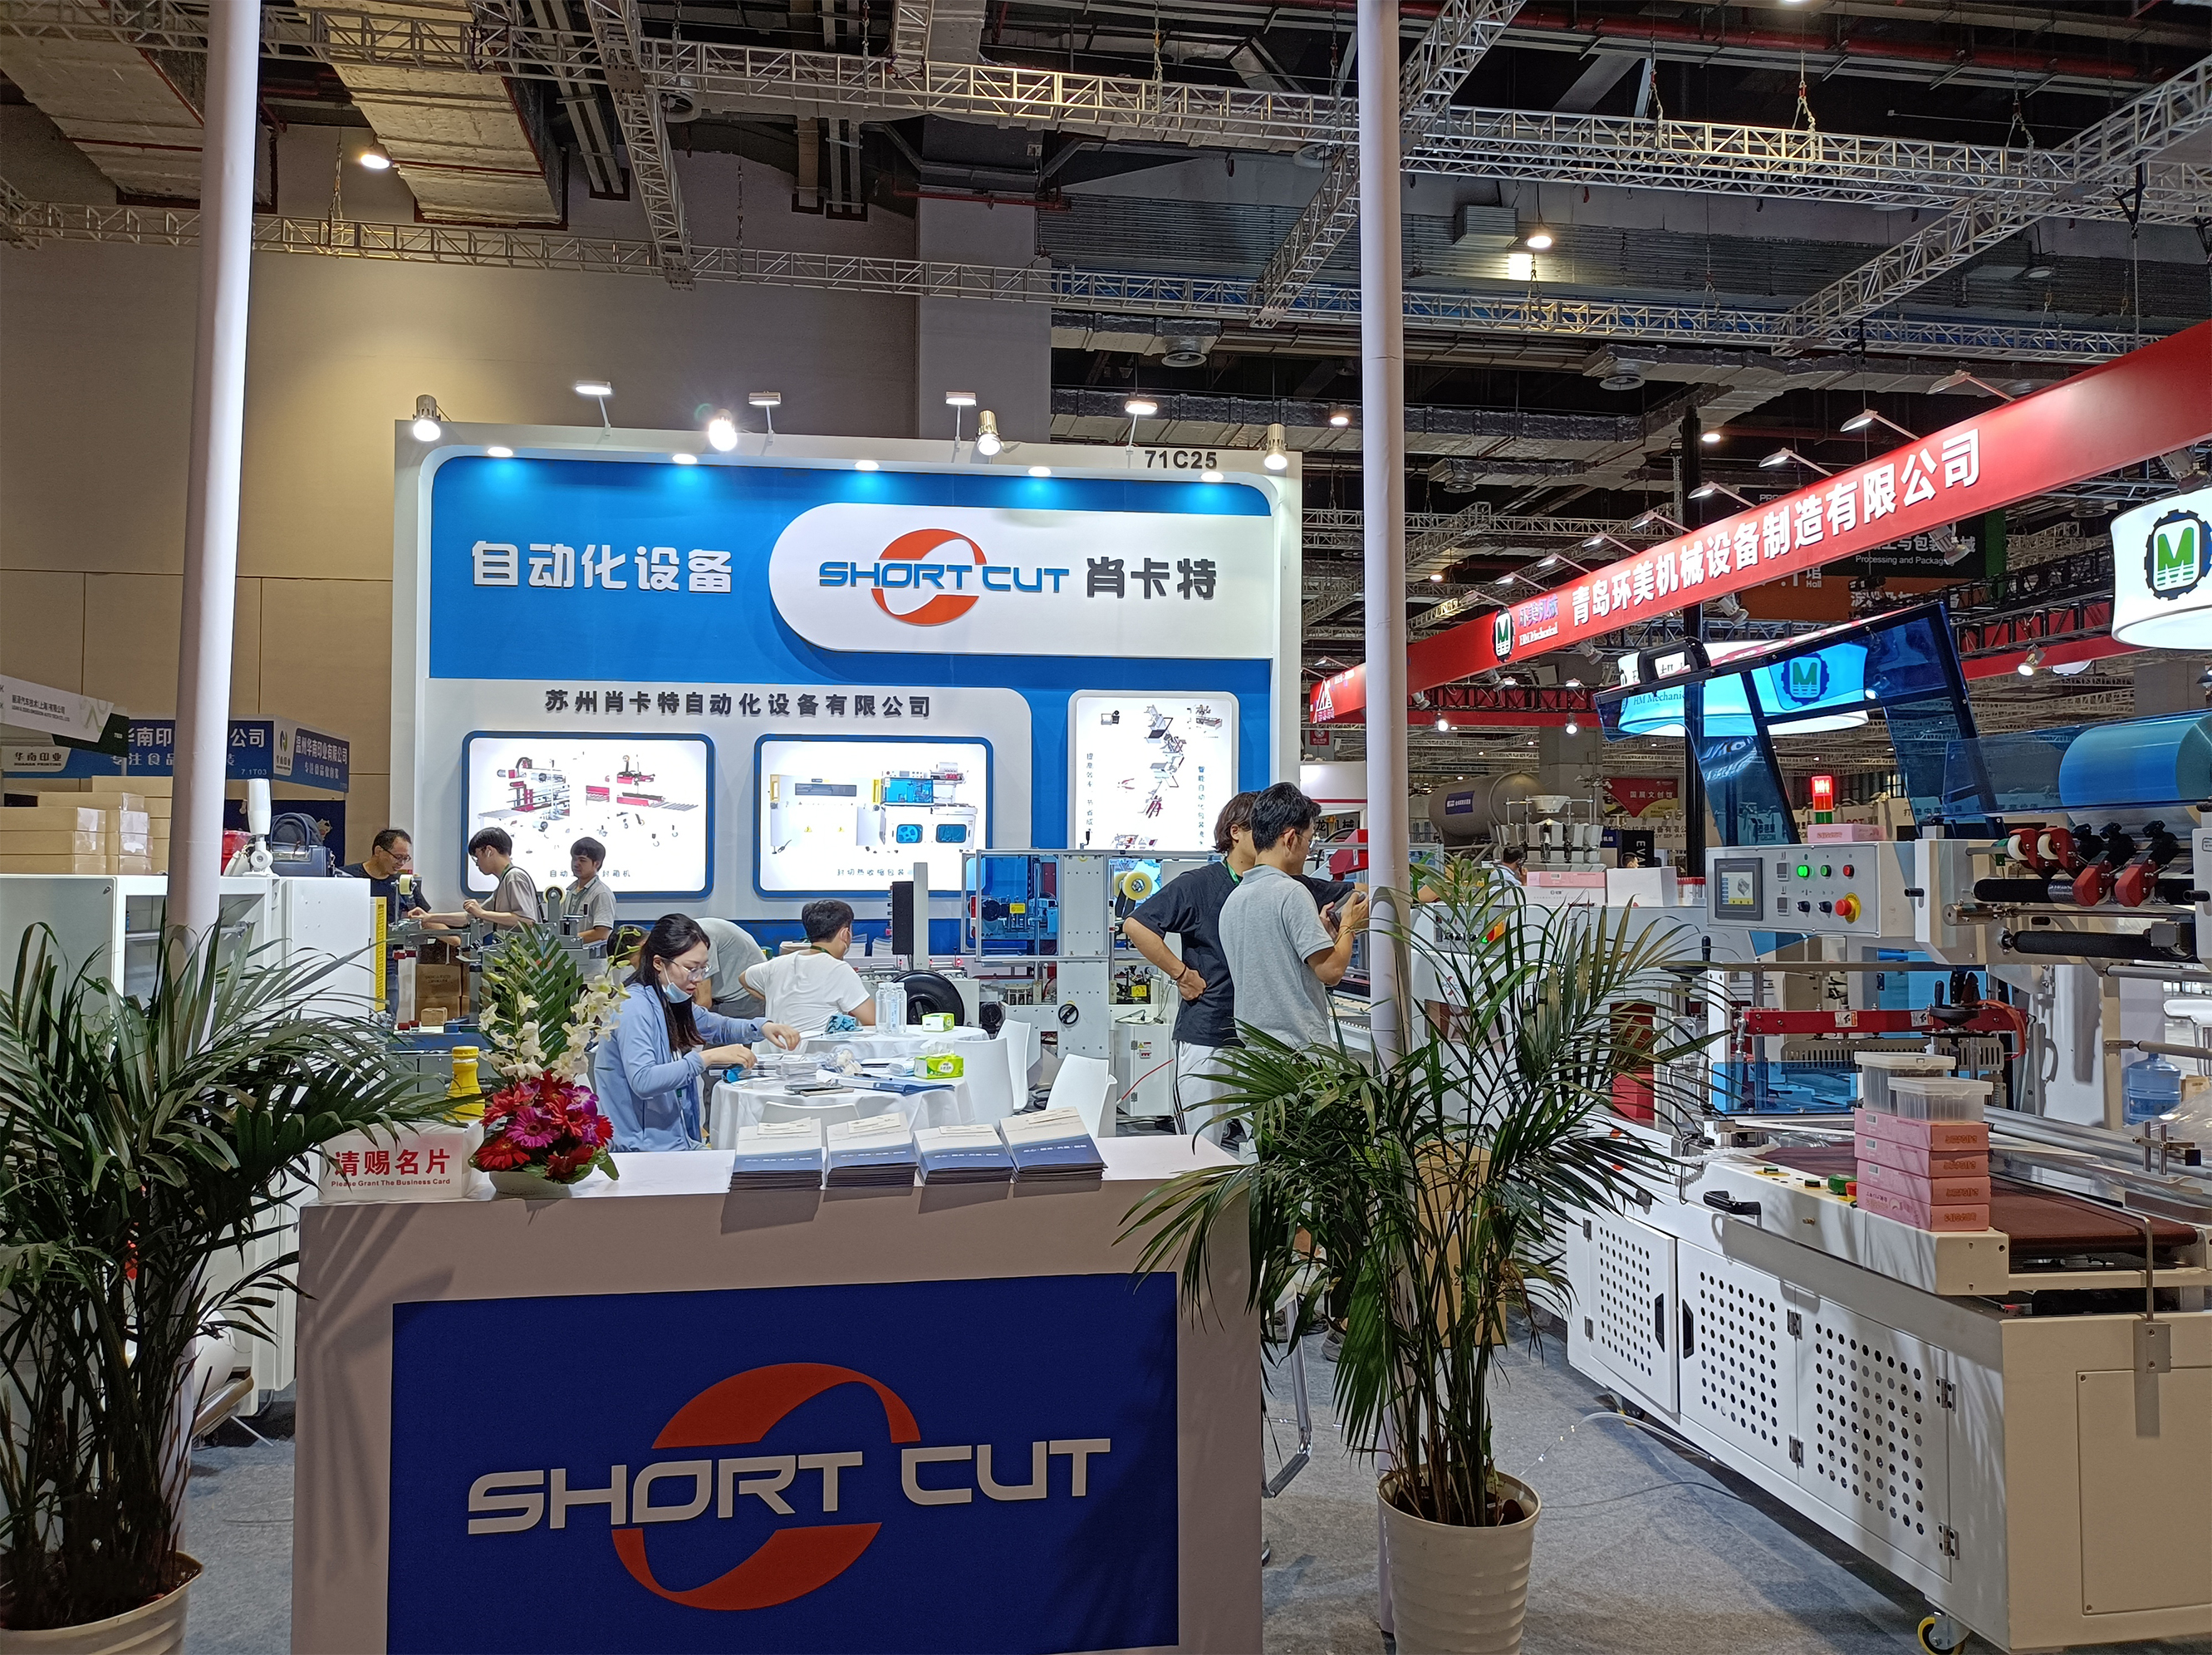 蘇州錢柜777自動化設備有限公司參加2020年上海包裝機械展會